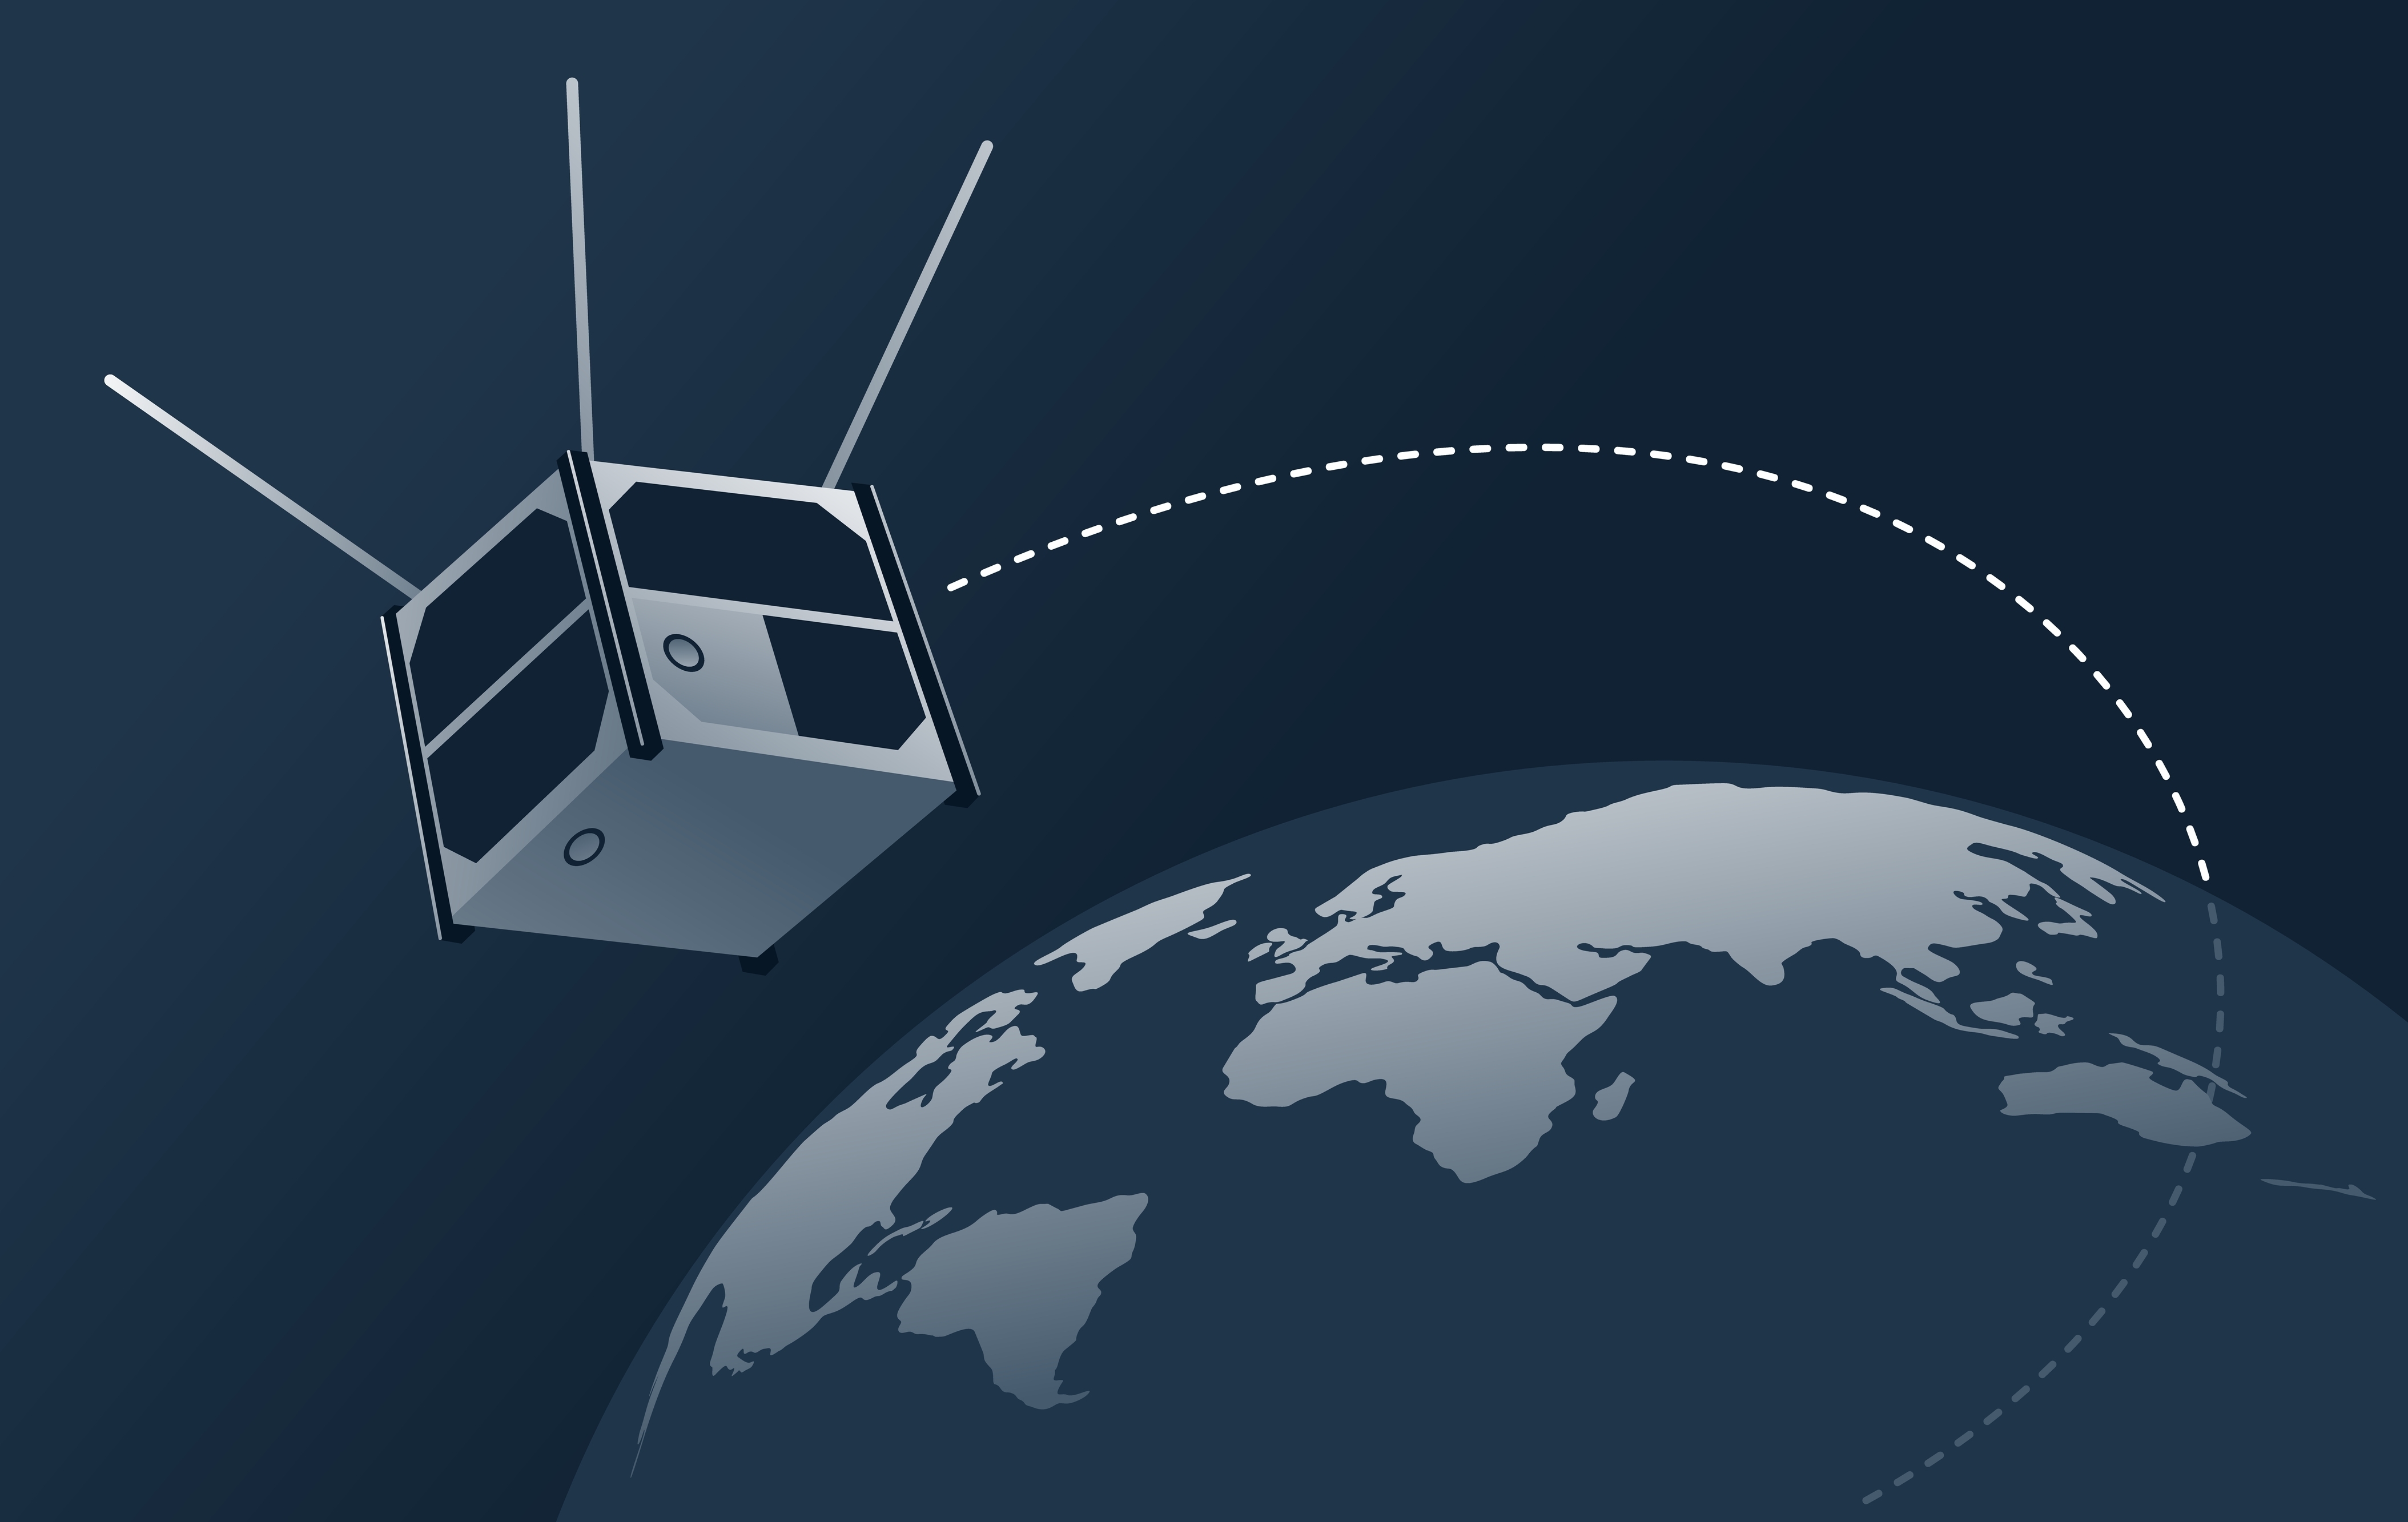 立方衛星是一種以標準尺寸和外形打造的奈米衛星。